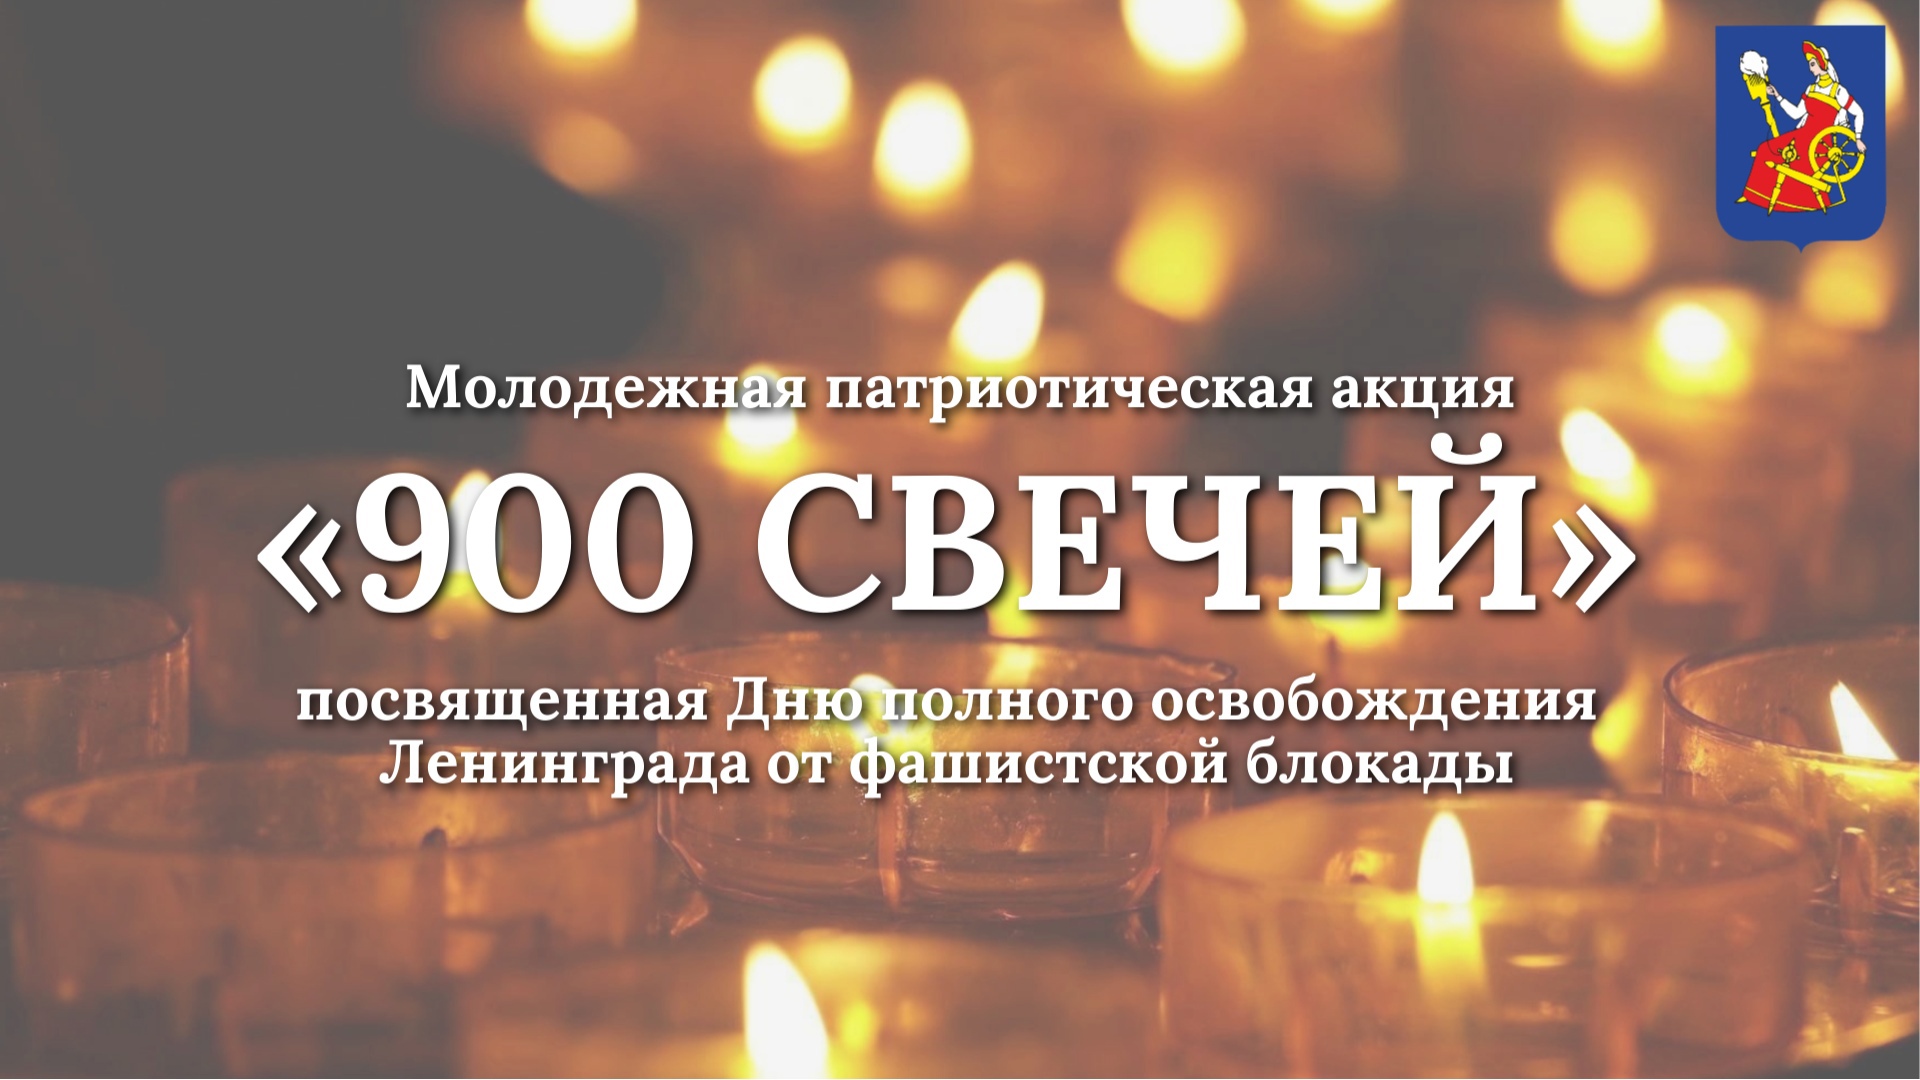 В областном центре пройдет молодежная патриотическая акция «900 свечей».